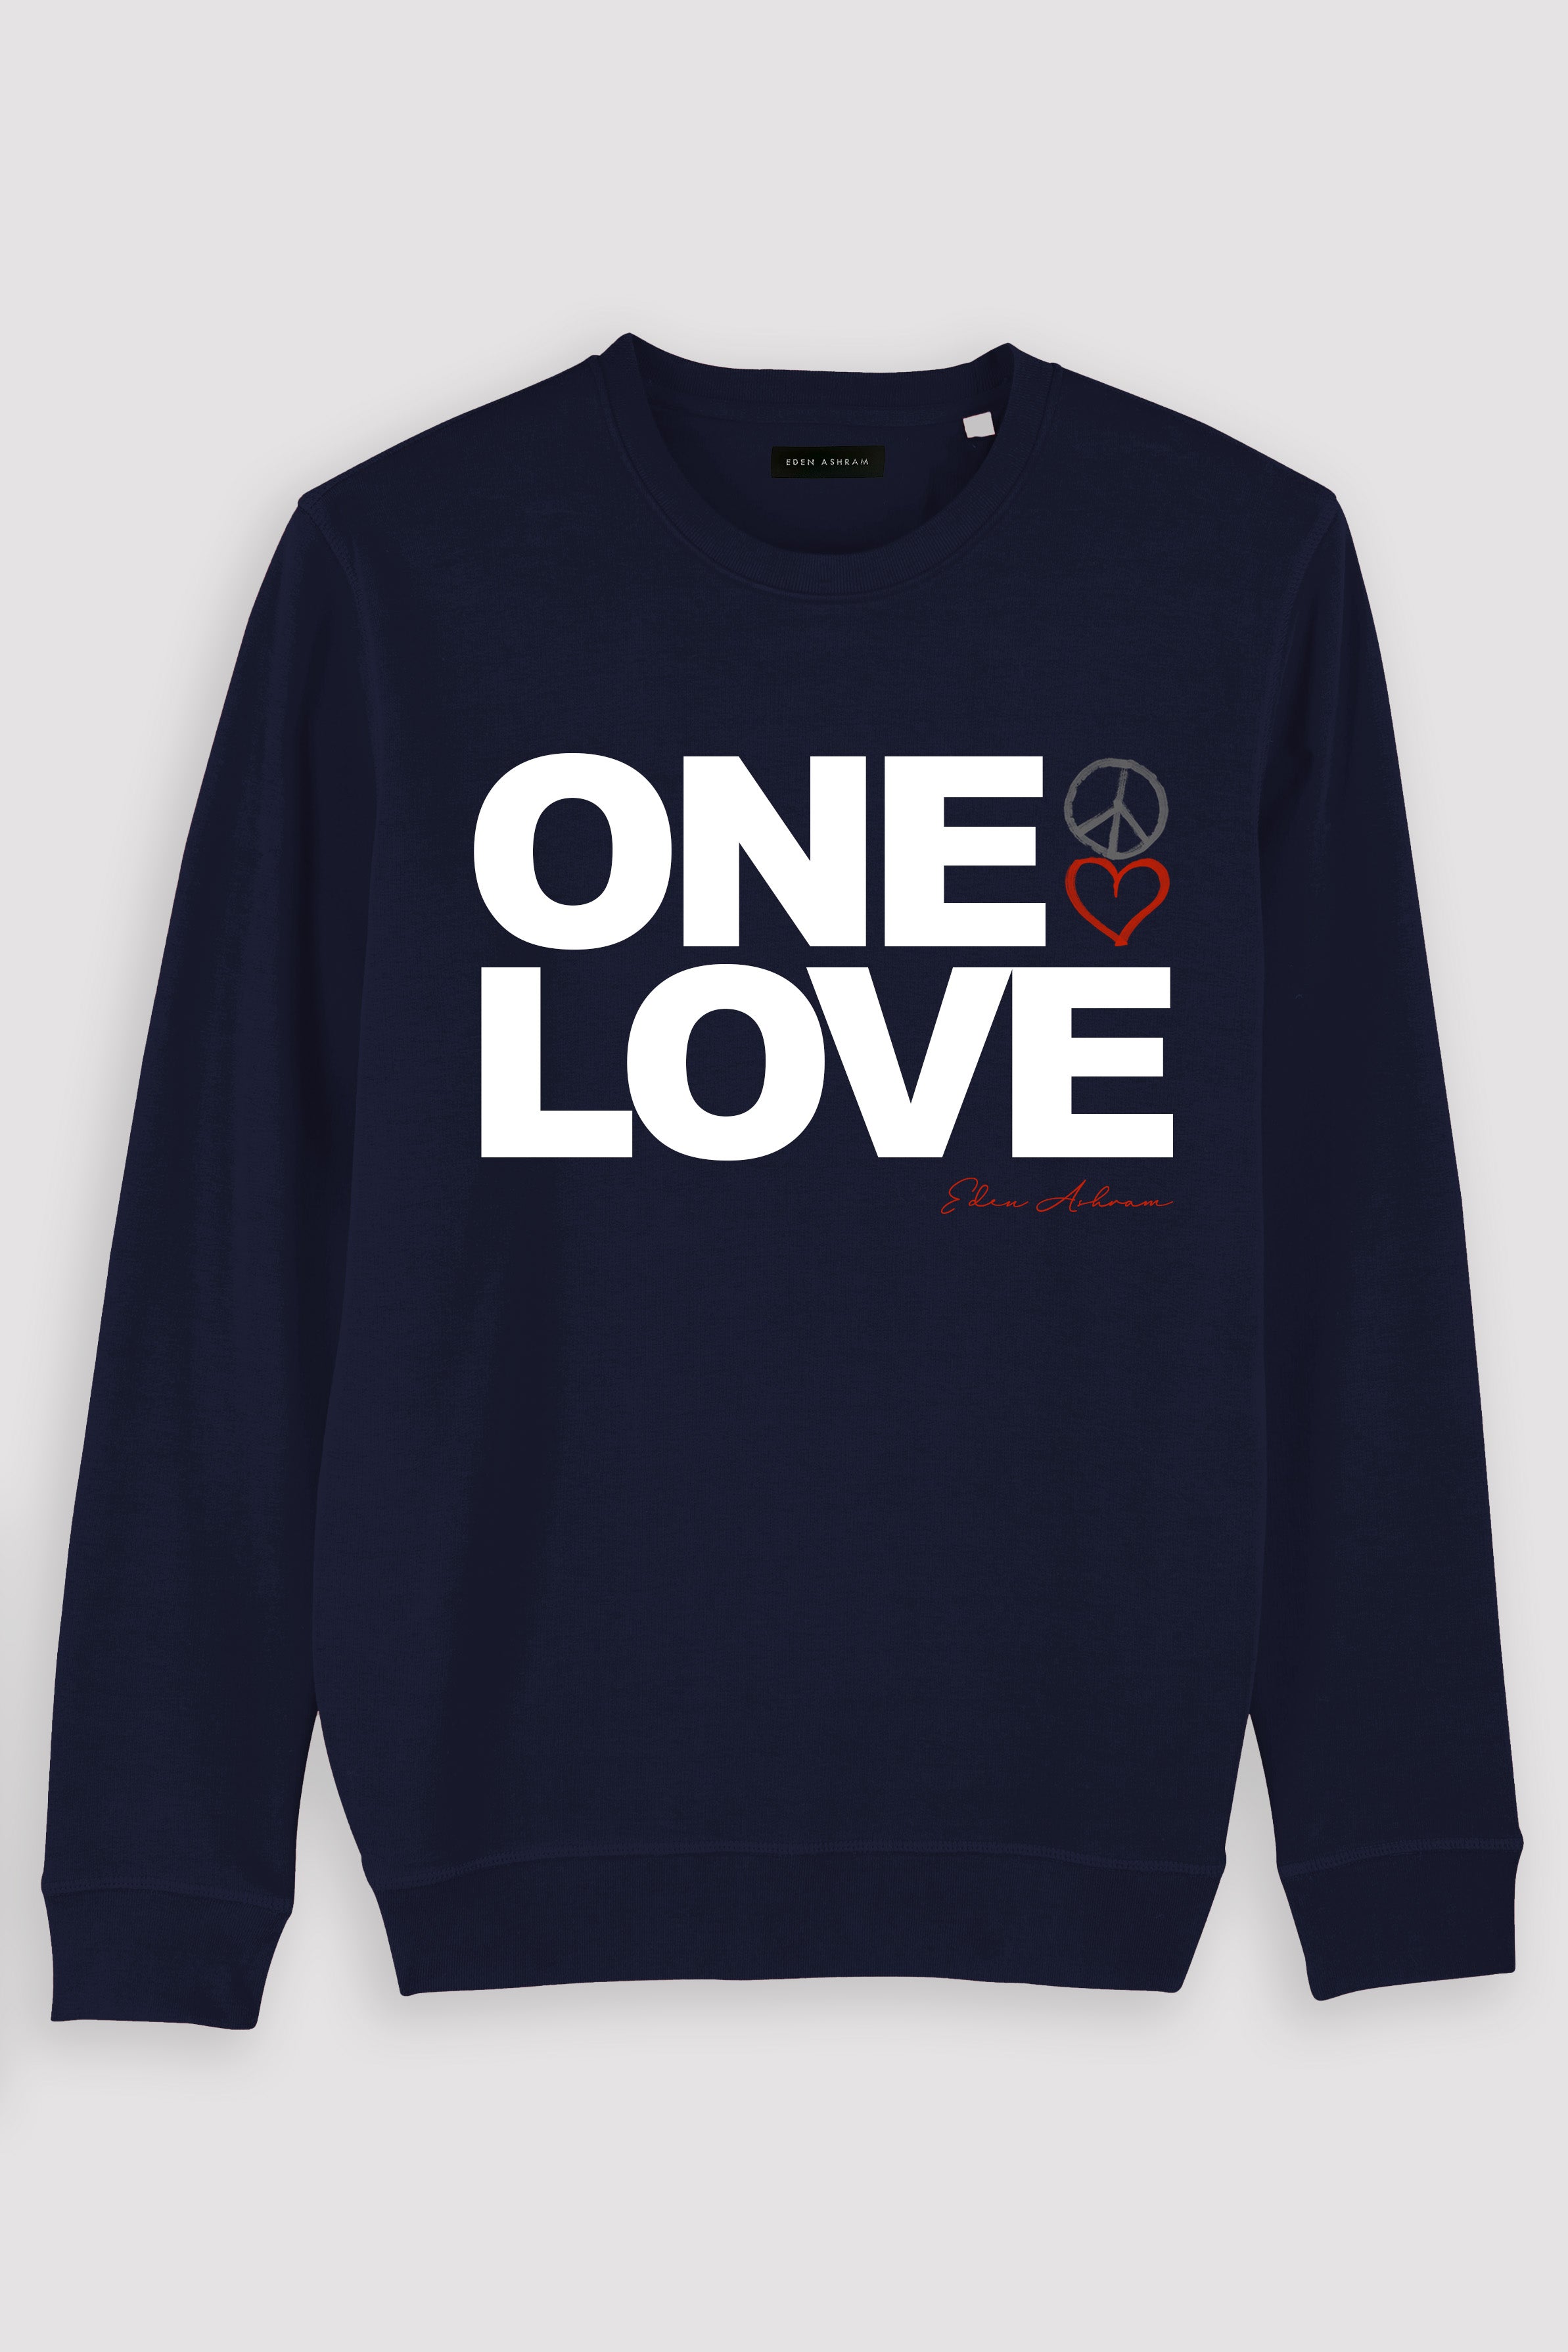 Eden Ashram One Love Premium Crew Neck Sweatshirt French Navy